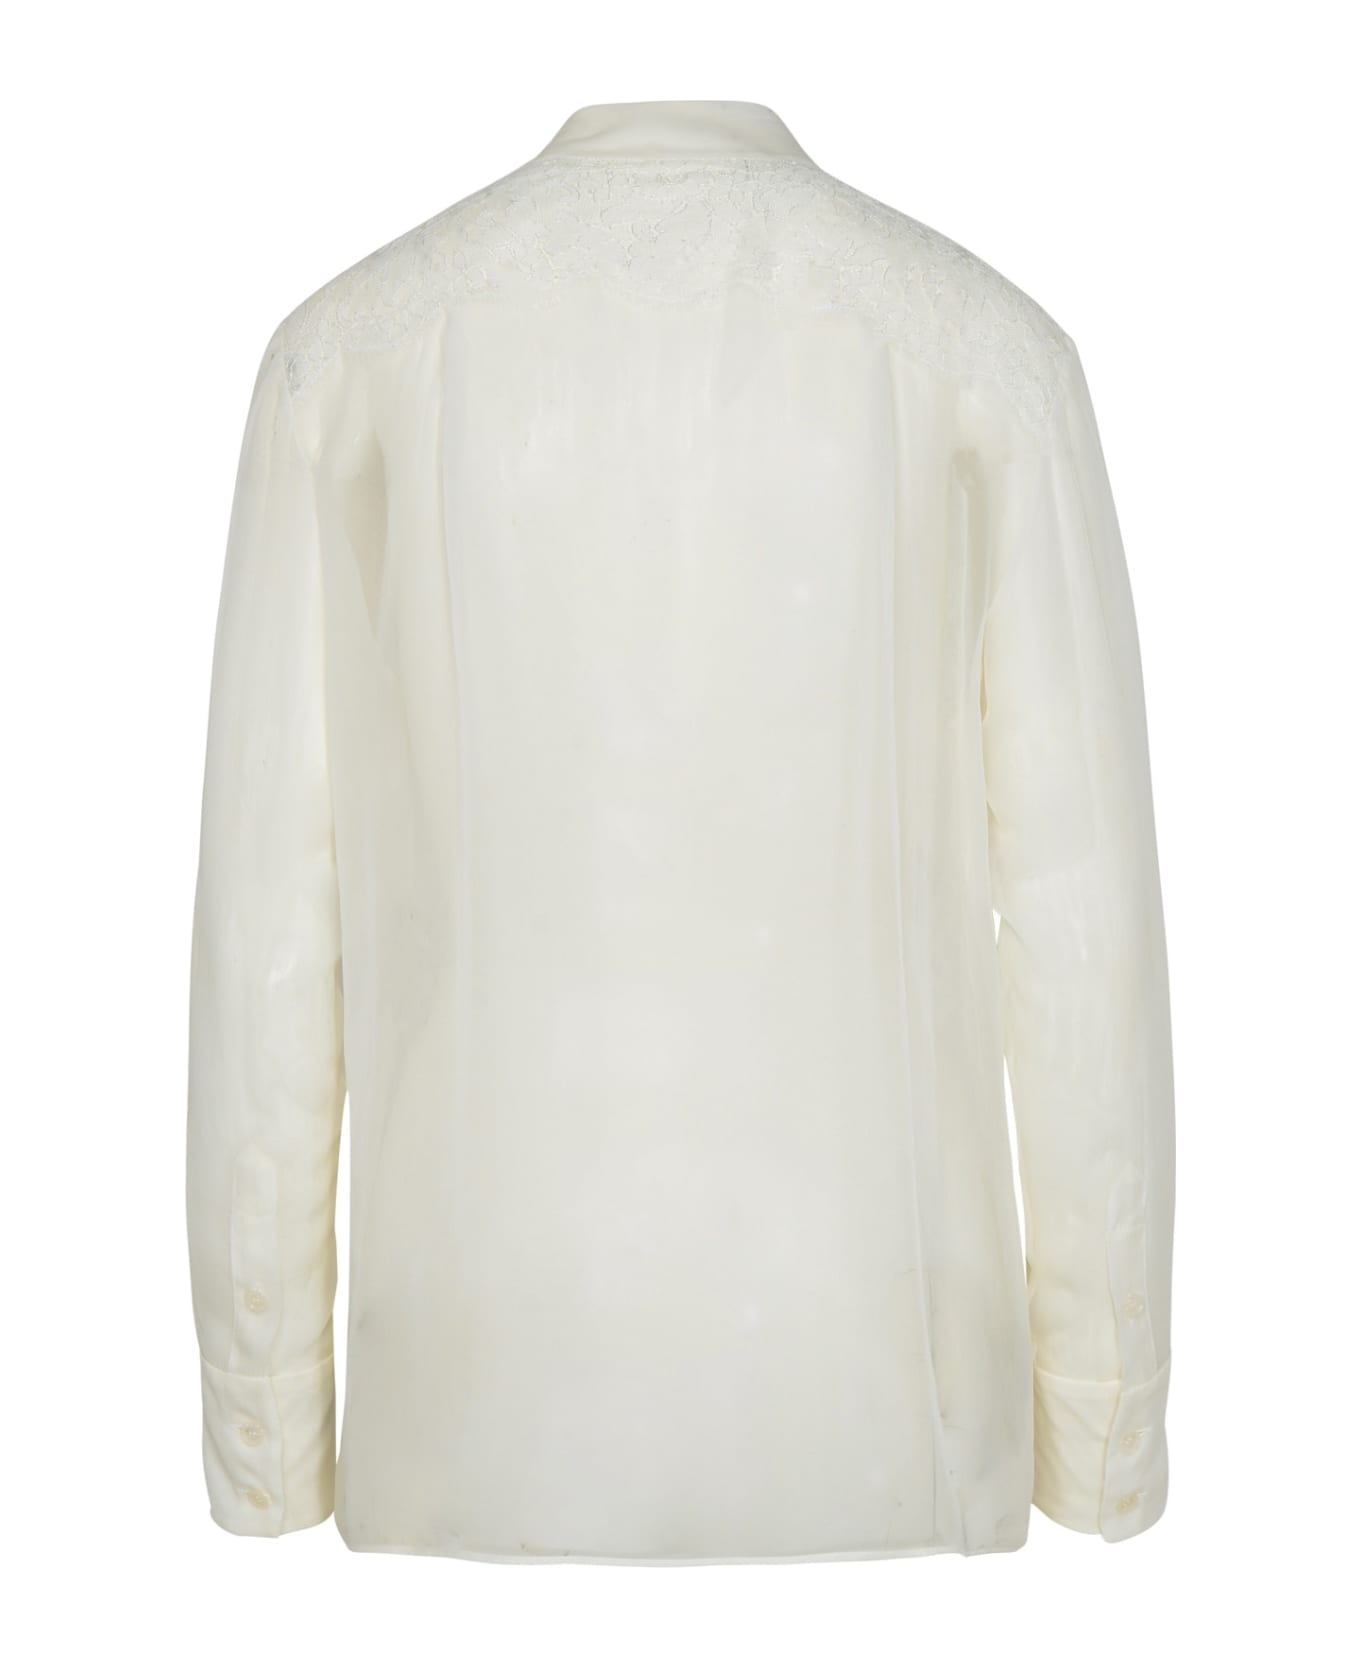 Dolce & Gabbana Beige Cashmere Blend Sweater - White